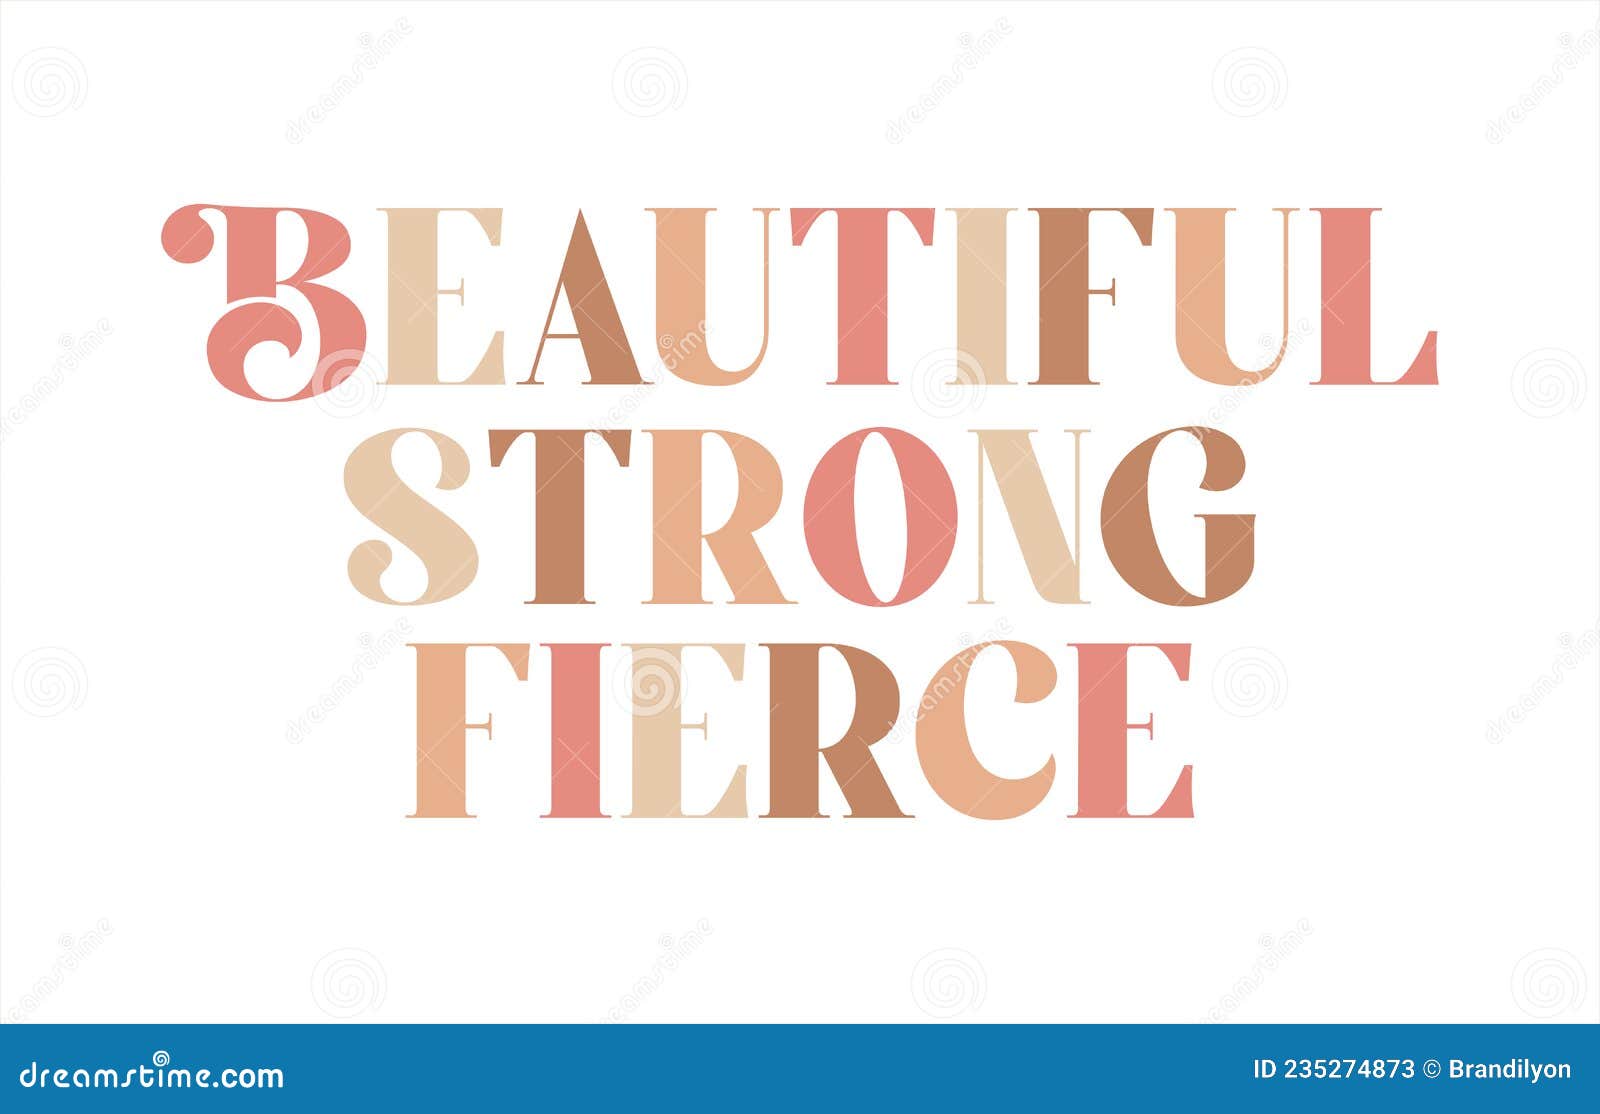 women empowerment message, positive words of affirmation, beautiful, strong, fierce lettering, sticker card print , modern